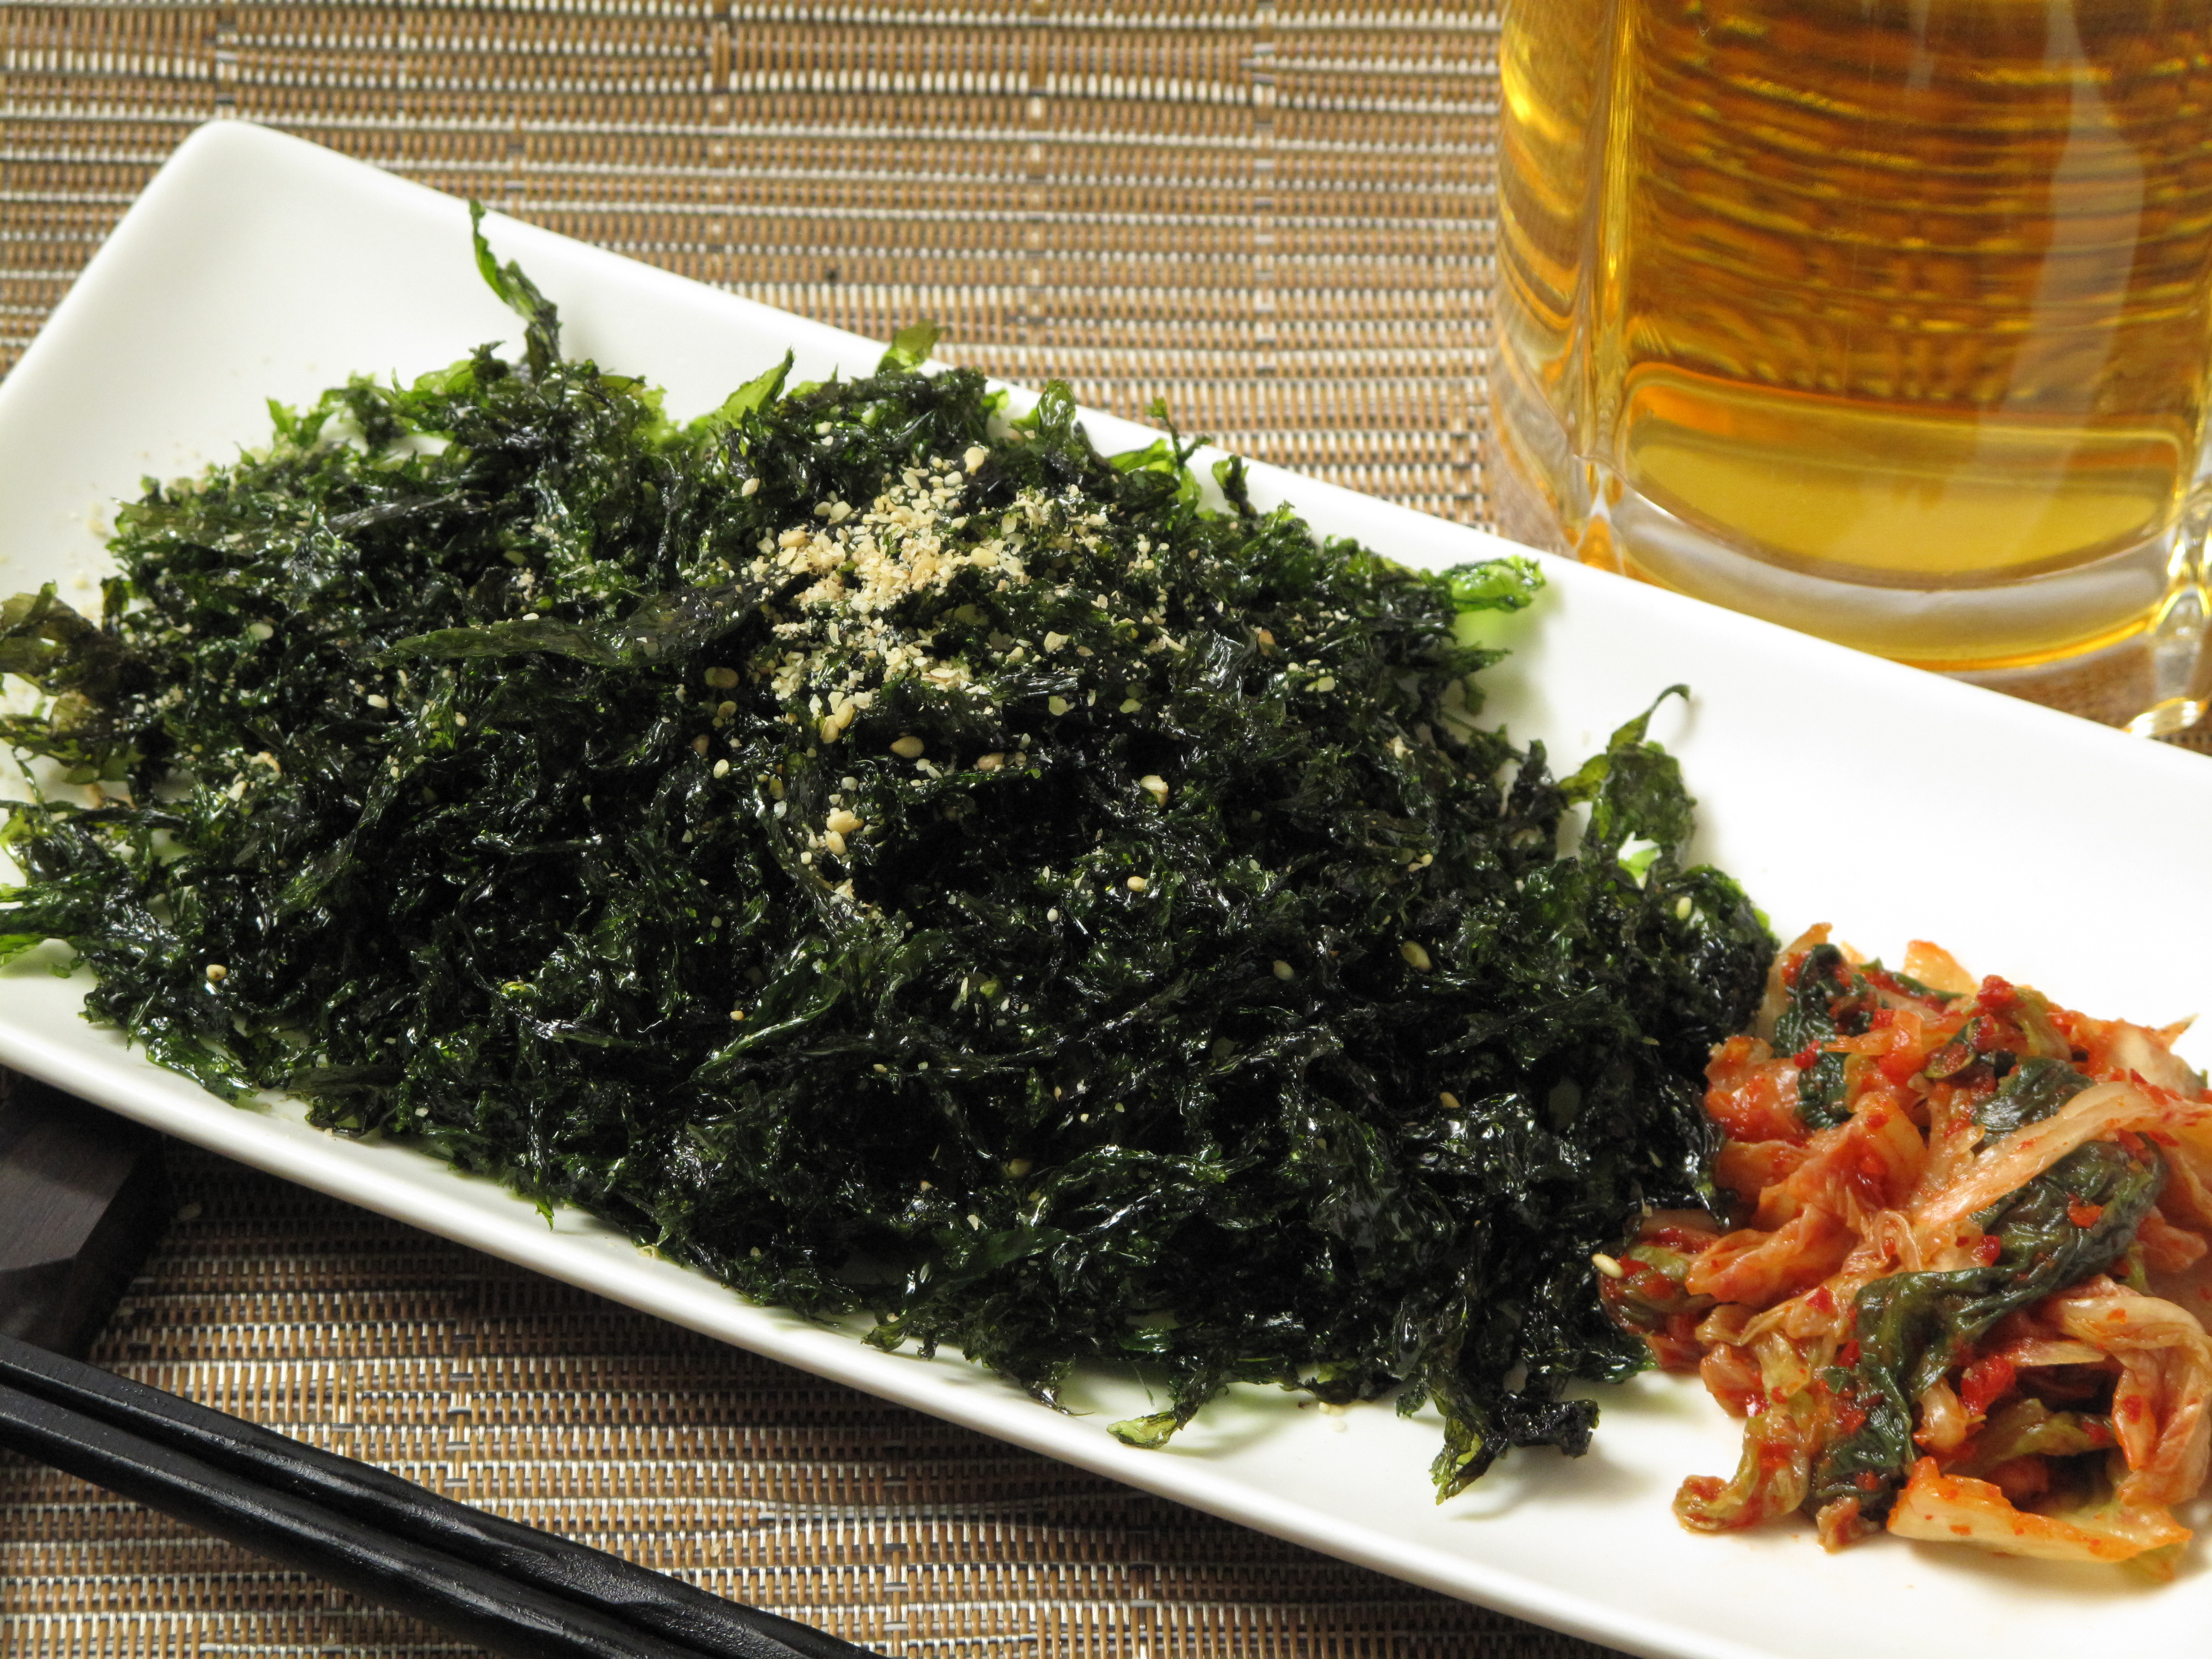 焼きバラ干し海苔 韓国海苔風 味匠七福屋の料理レシピ